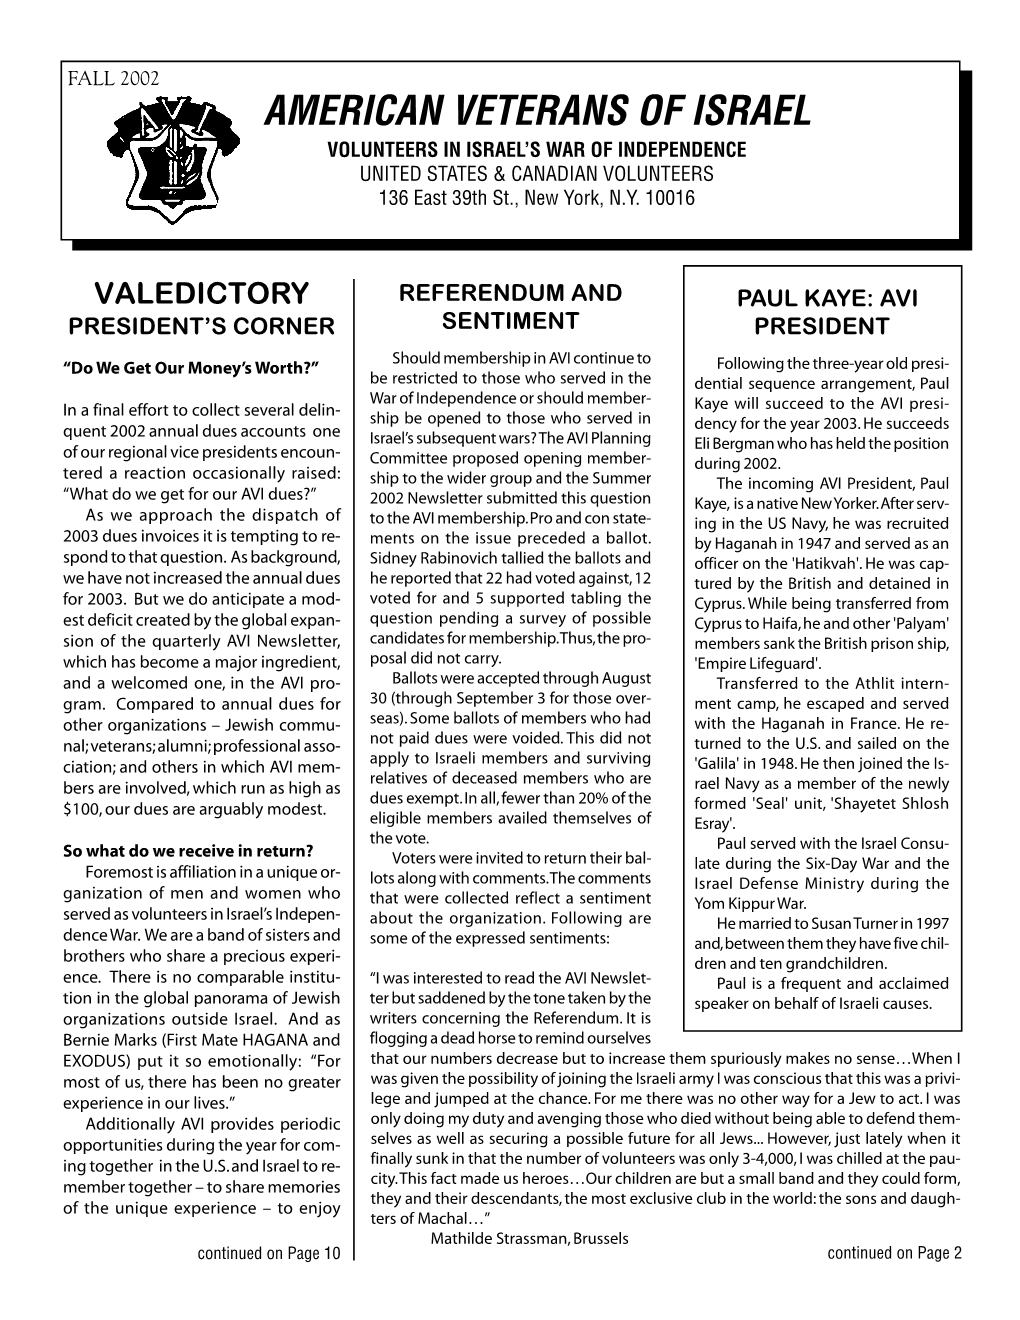 AVI Newsletter Fall 2002